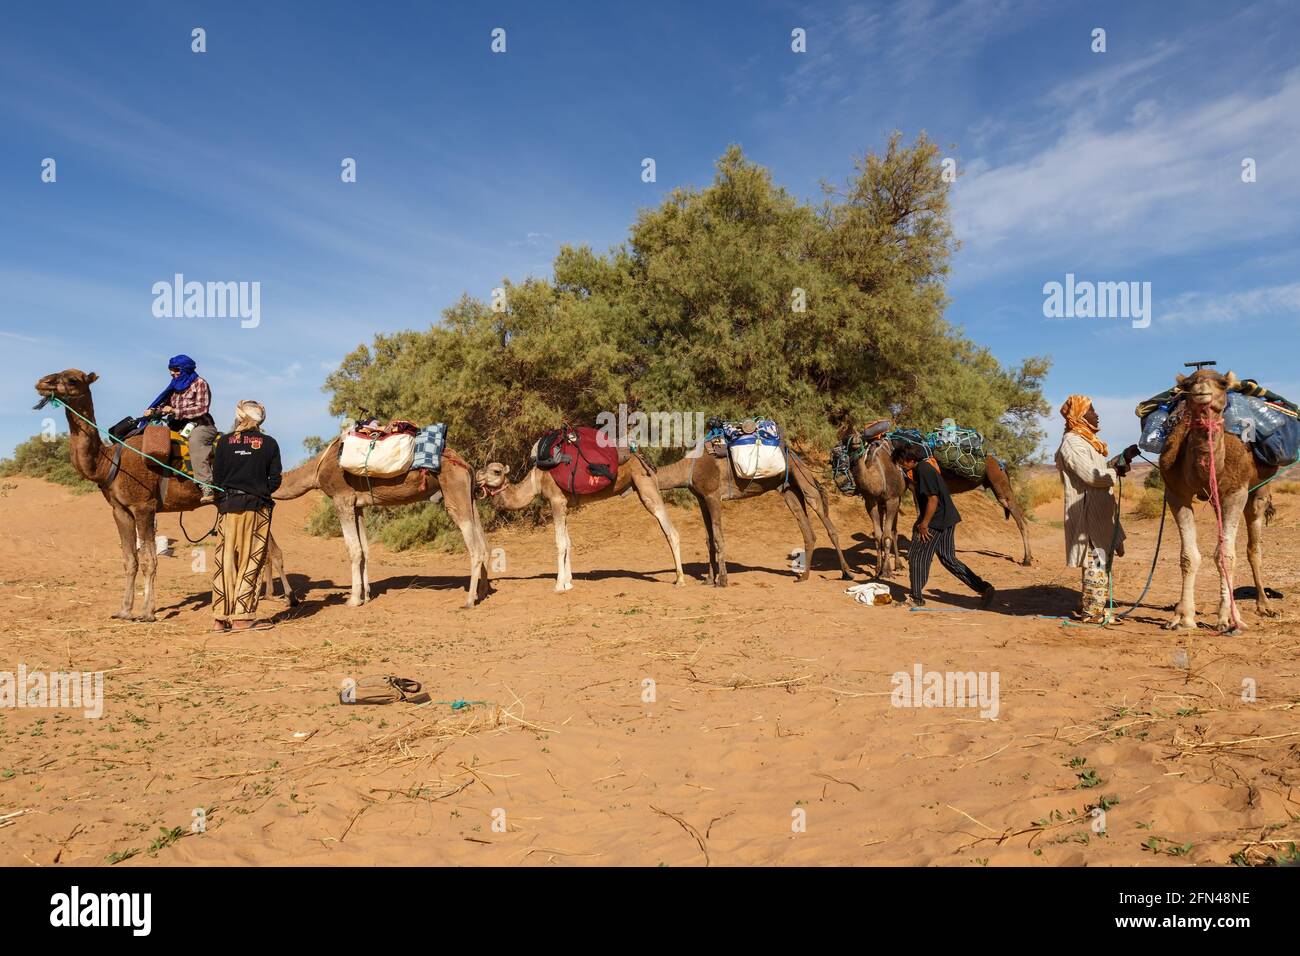 Province d'Errachidia, Maroc - 22 octobre 2015 : les Berbères préparent des chameaux pour le voyage. Chargement de choses sur des chameaux. Désert du Sahara. Banque D'Images